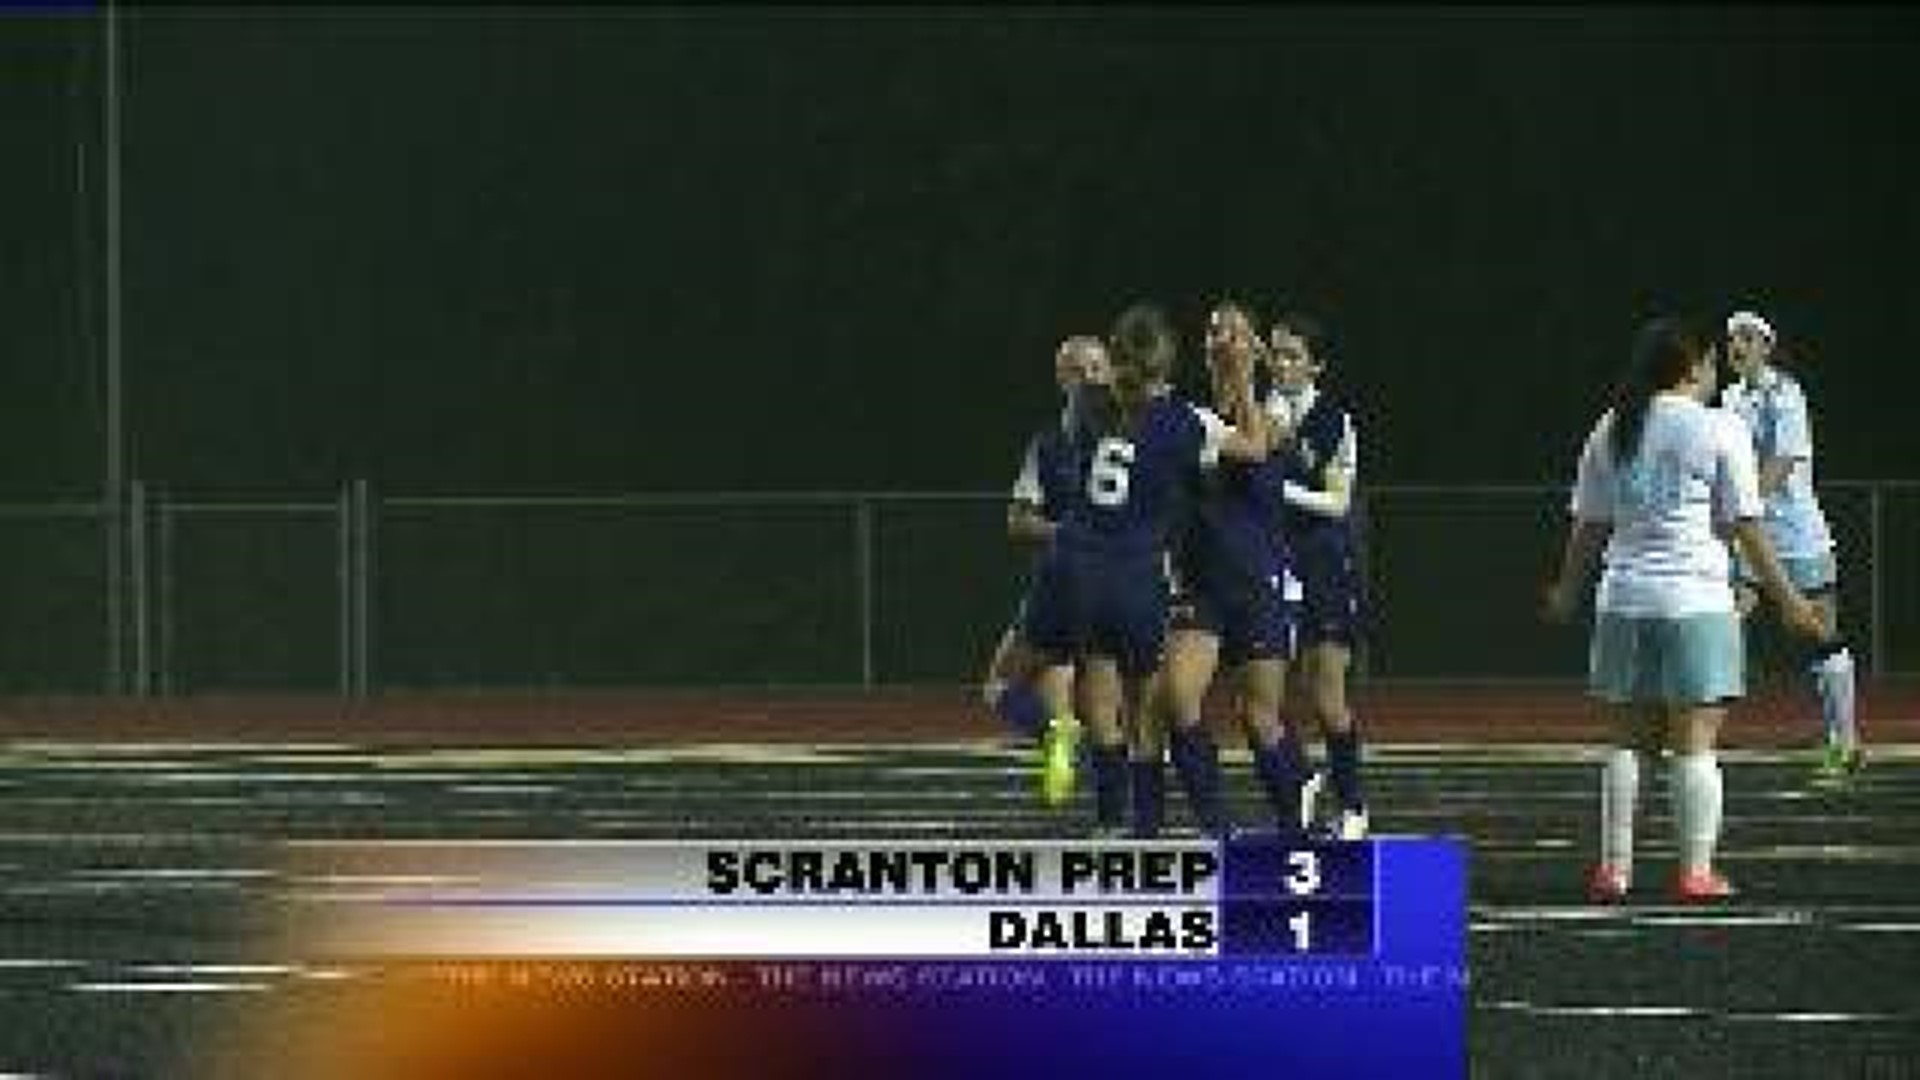 Scranton Prep vs. Dallas Soccer